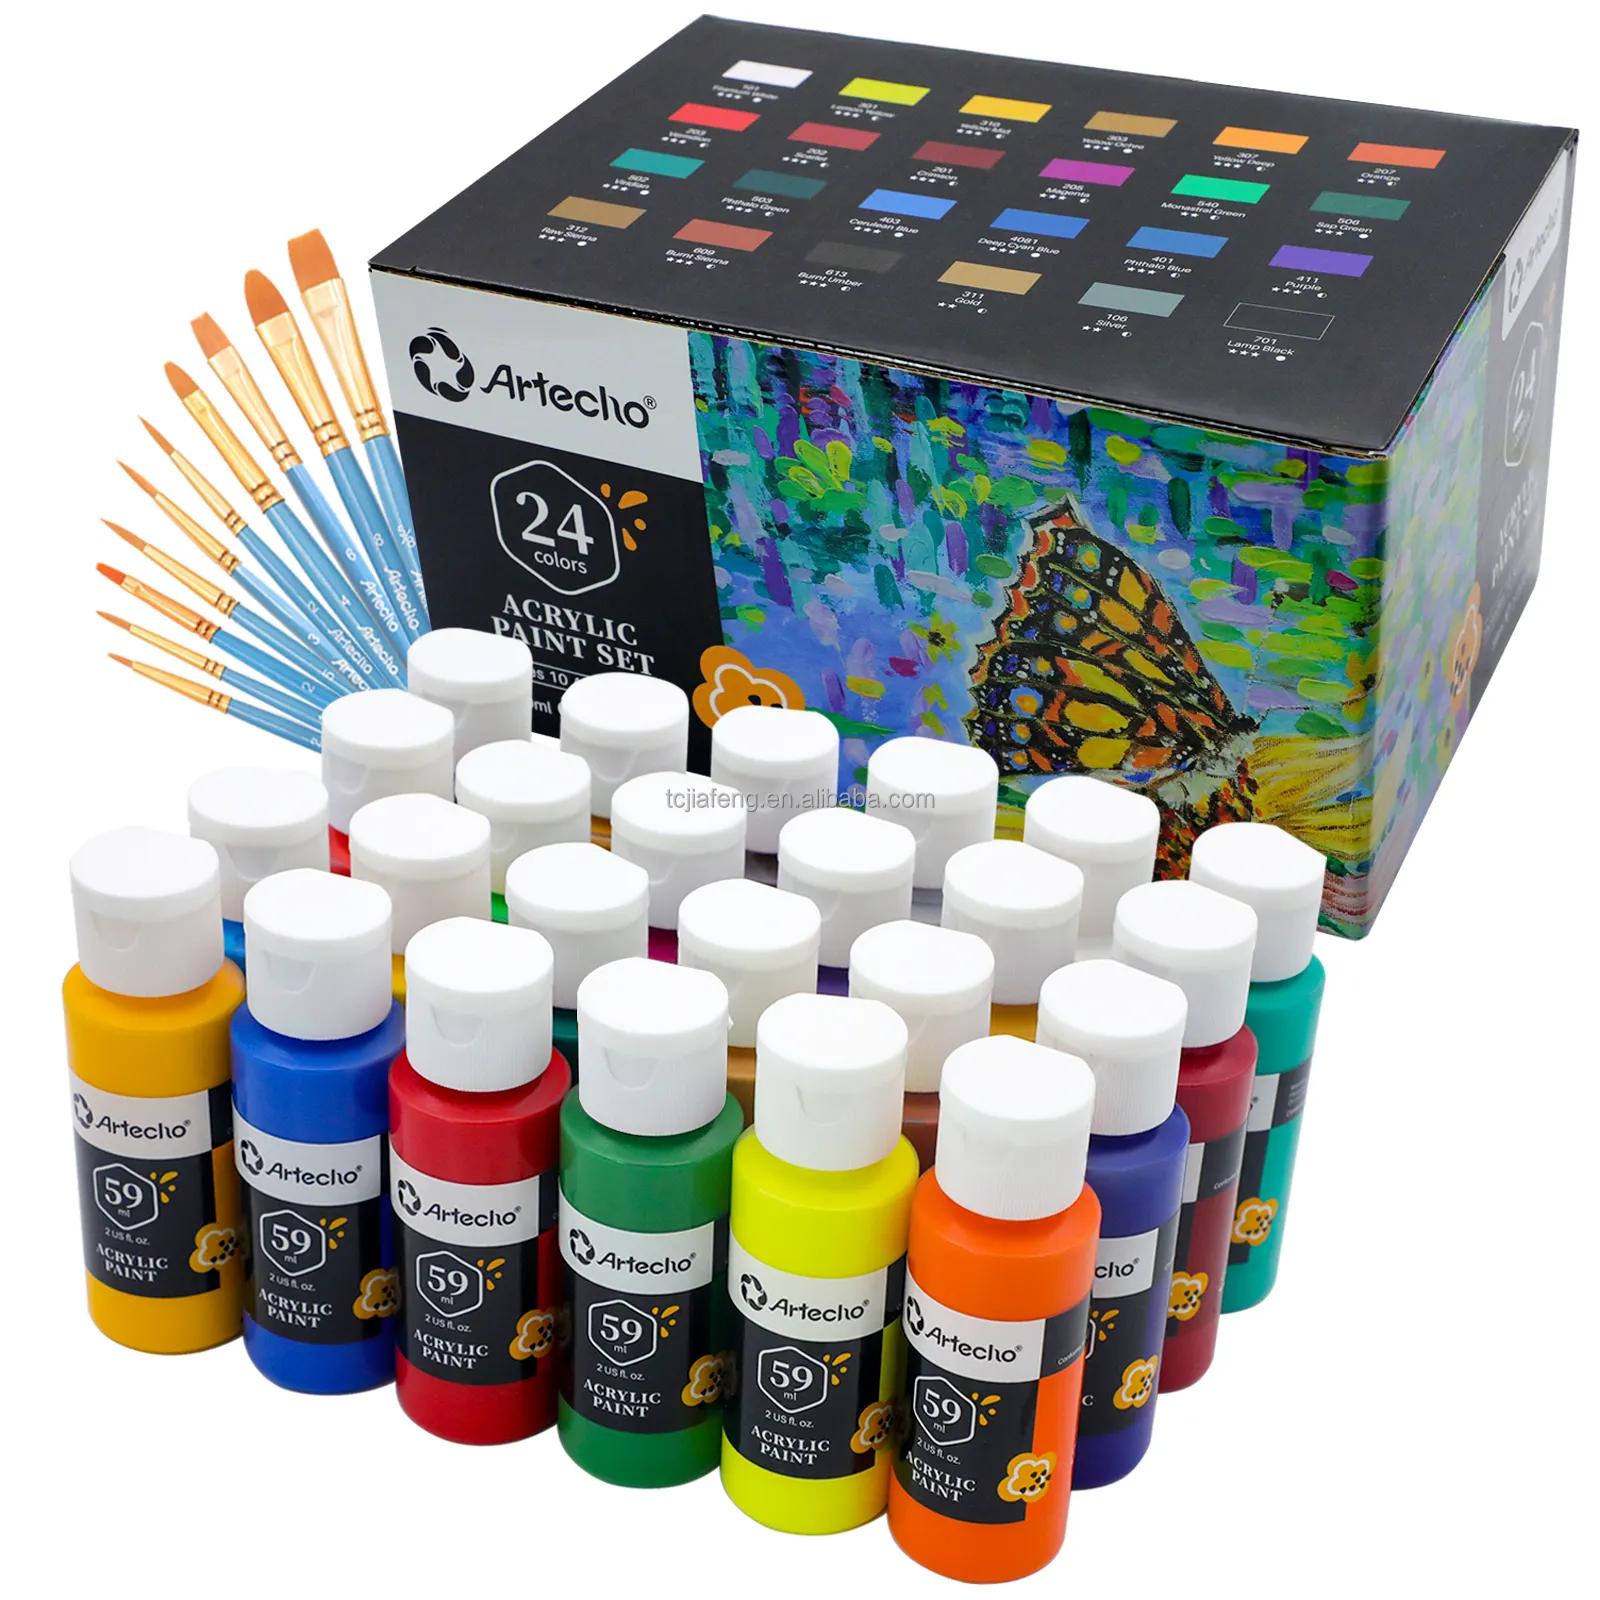 Artecho alta qualidade 24 cores conjunto de tinta acrílica 2oz/59ml garrafas com 10 pcs pincel para pintura artística